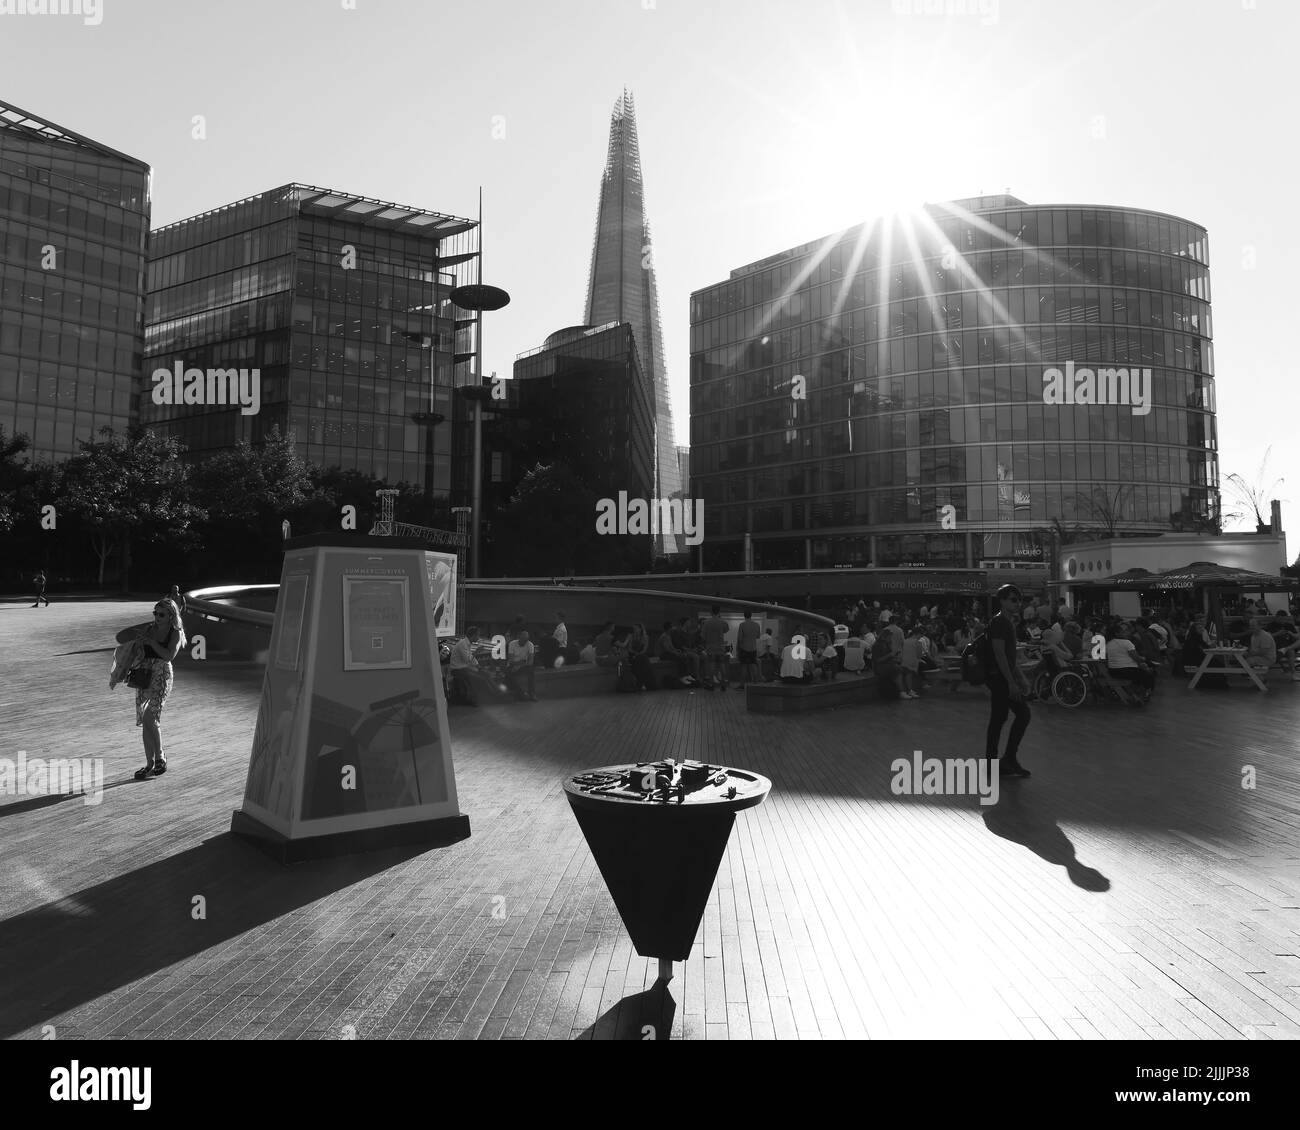 Londra, Greater London, Inghilterra, giugno 22 2022: Zona della South Bank, tra cui la Scoop con locali commerciali e il grattacielo Shard. Modello dell'area Foto Stock